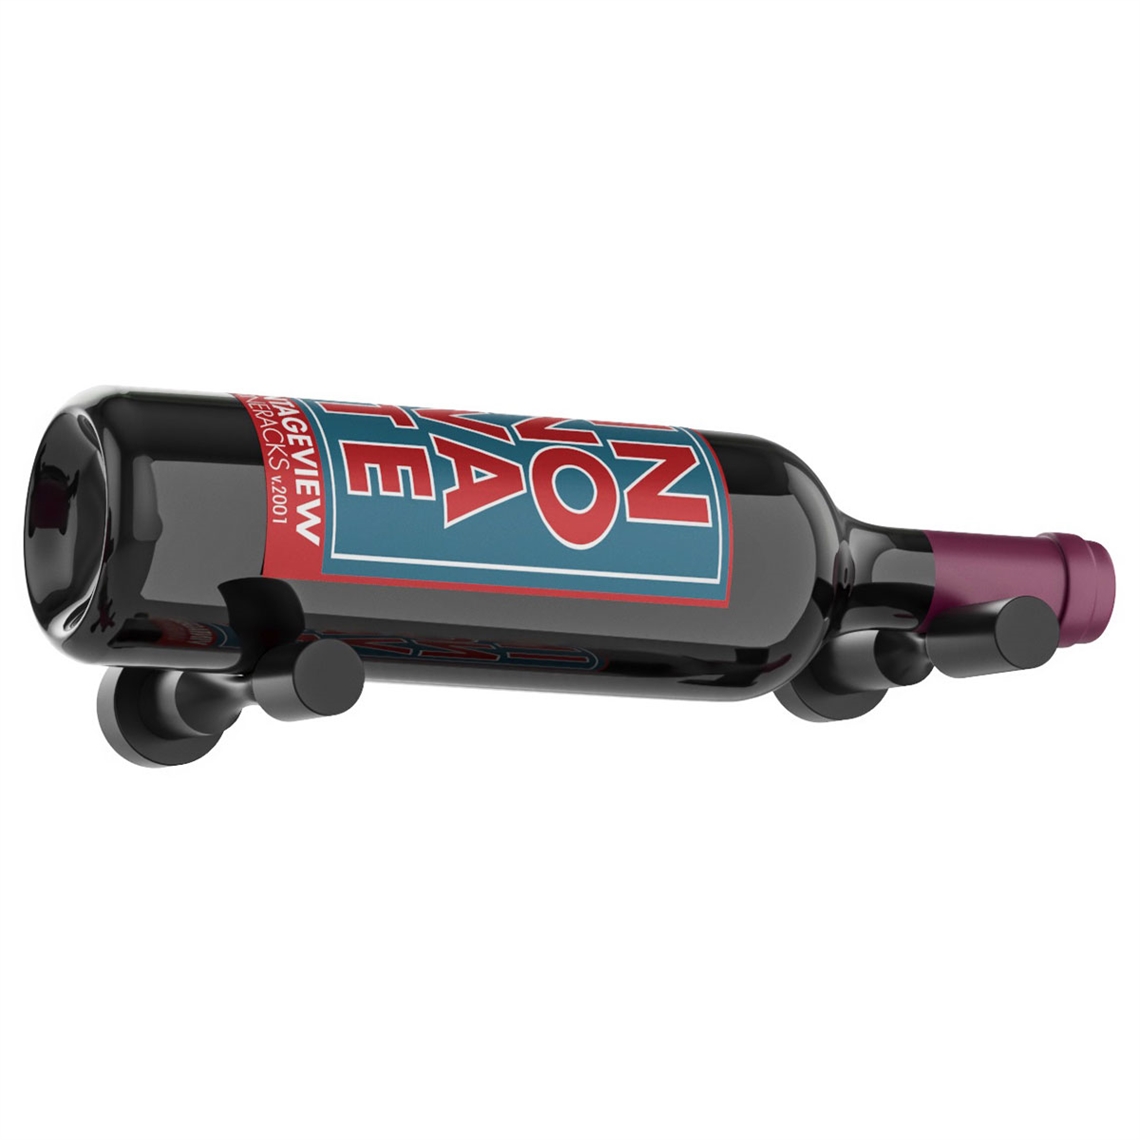 VintageView Wall Mounted Vino Series - Vino Pins 1 Bottle Wine Rack - Black